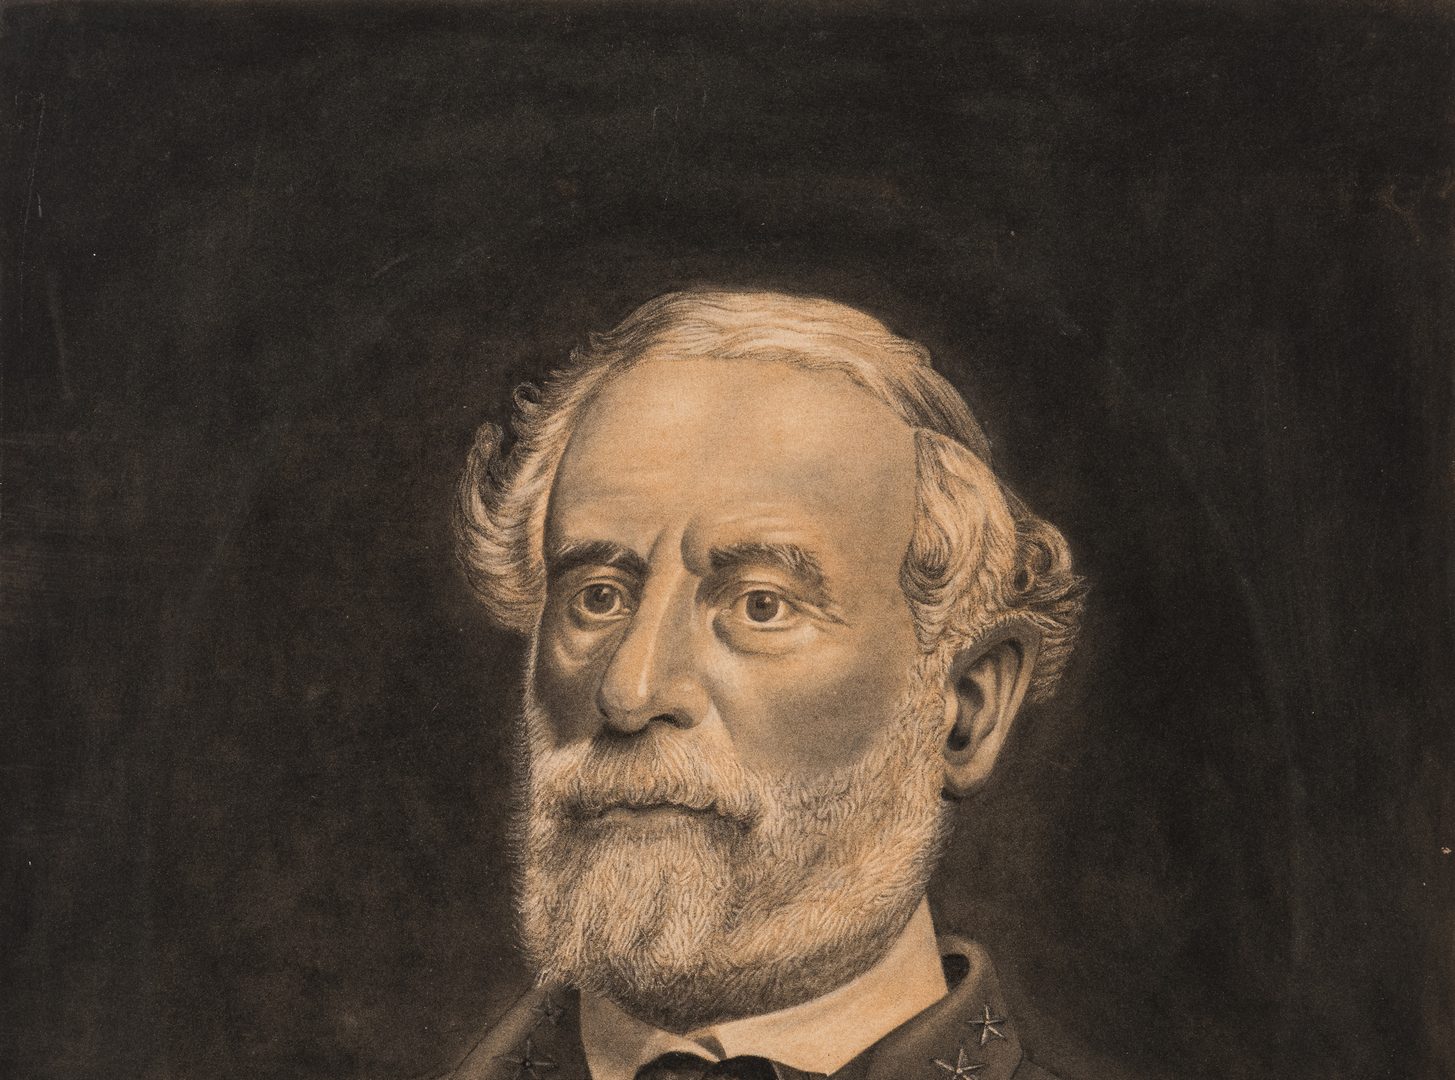 Lot 349: Robert E. Lee Charcoal Portrait; Lees of VA Print